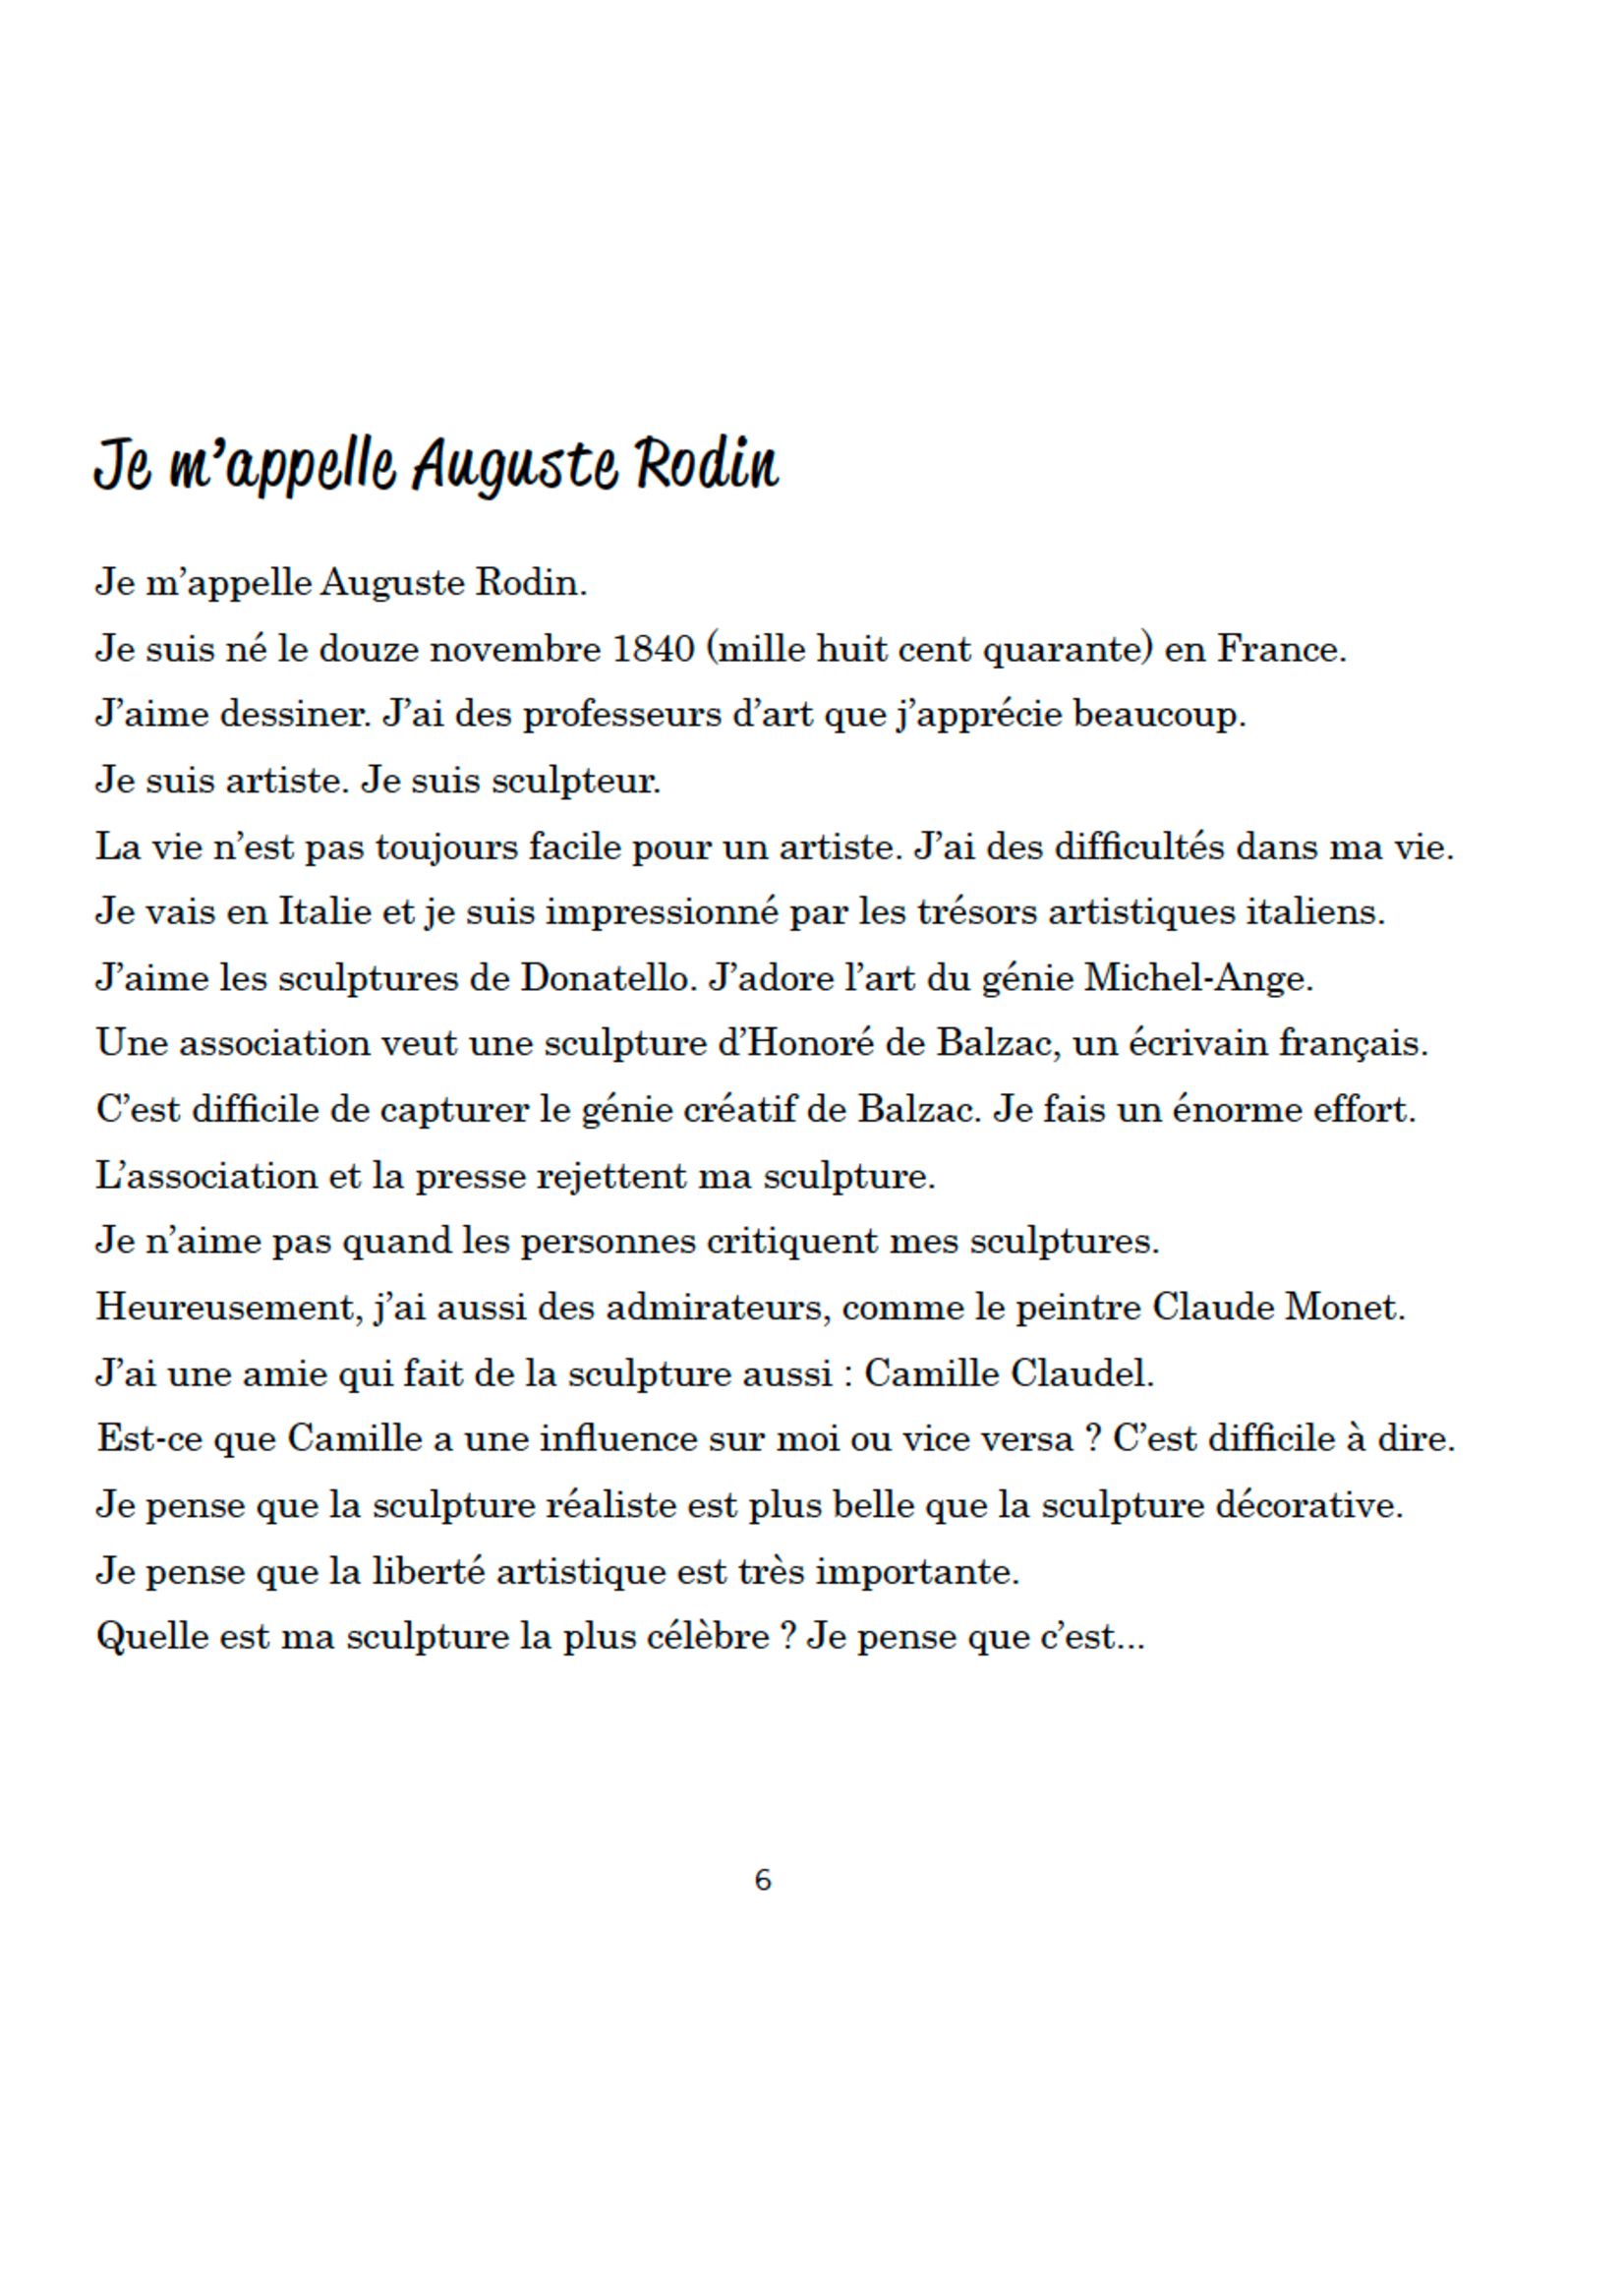 Arcos Publishers Qui parle français ? Deel 10